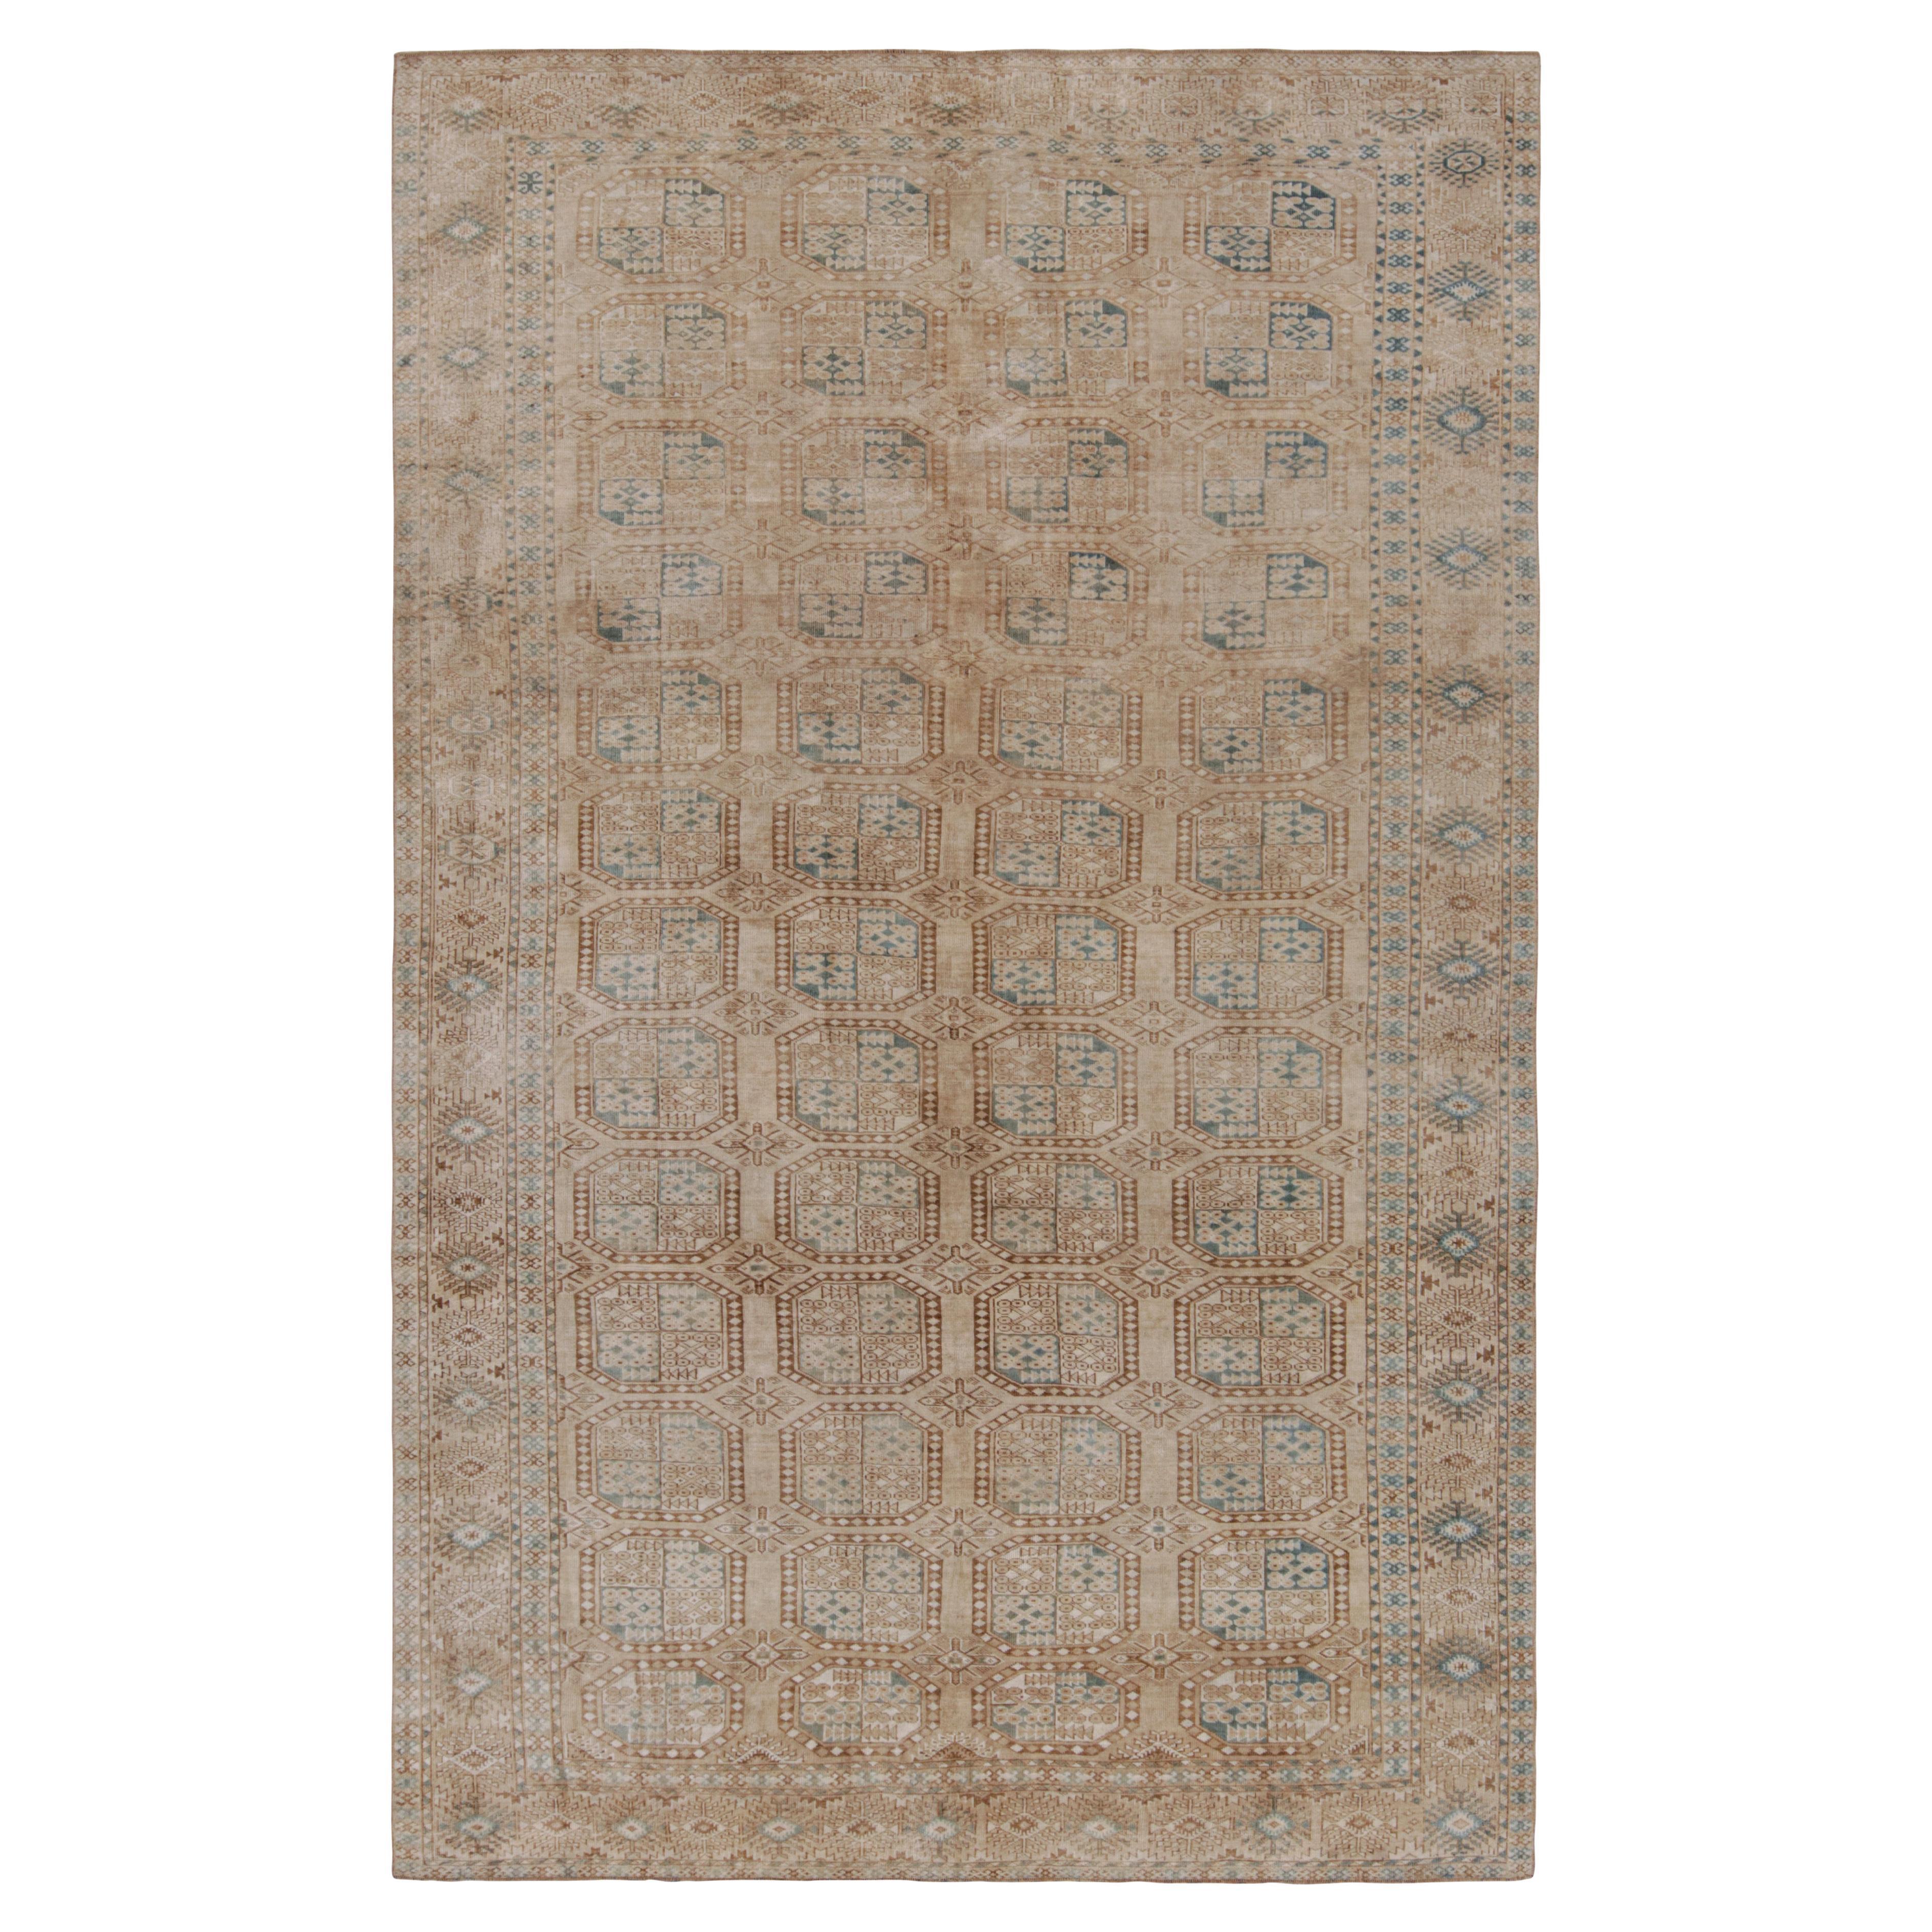 Vintage Ersari Teppich in Beige-Braun mit geometrischen Medaillons, von Rug & Kilim